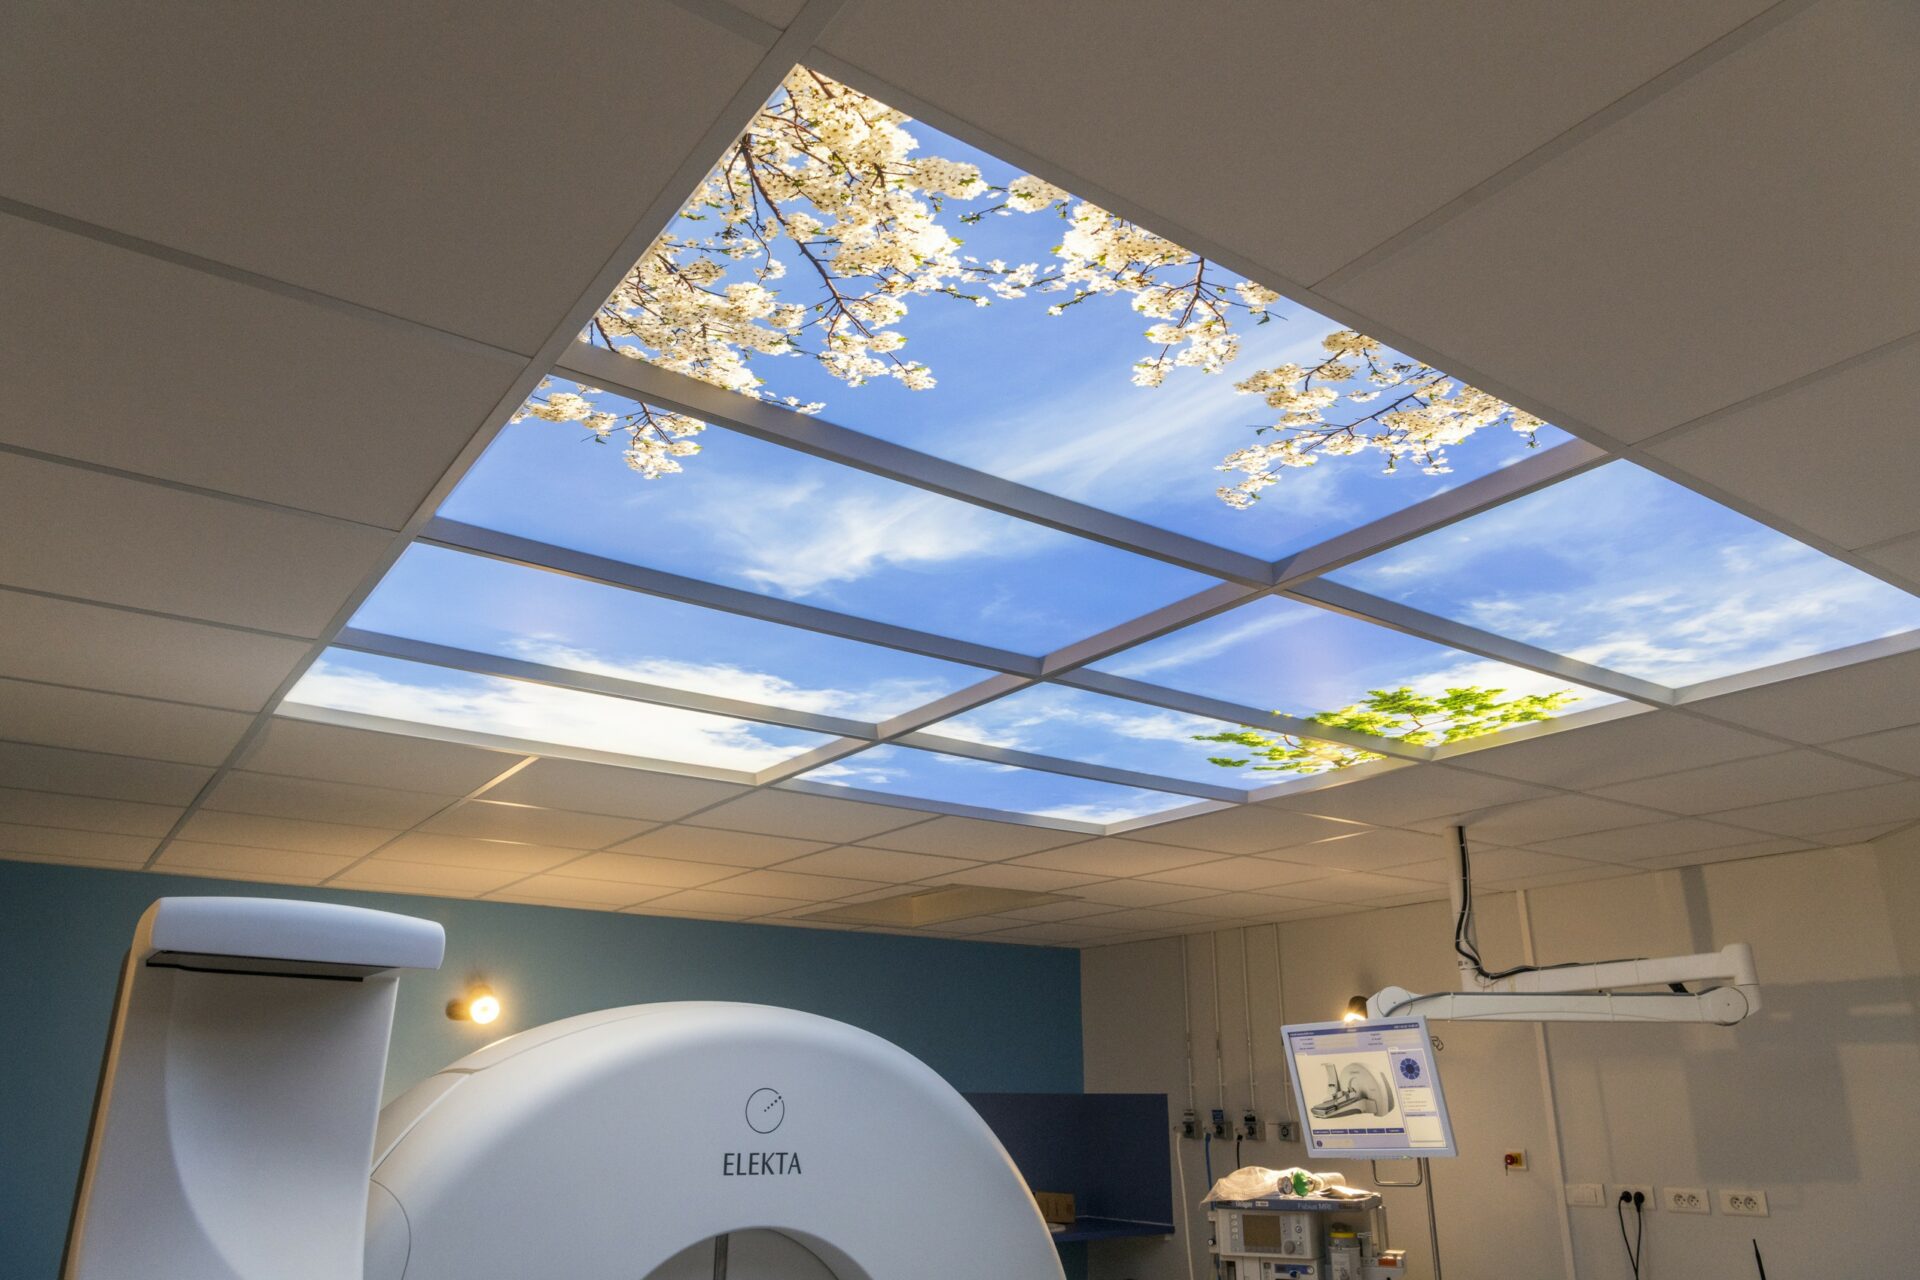 Faux plafond lumineux Cumulux pour illuminer une salle d'imagerie médicale aveugle.